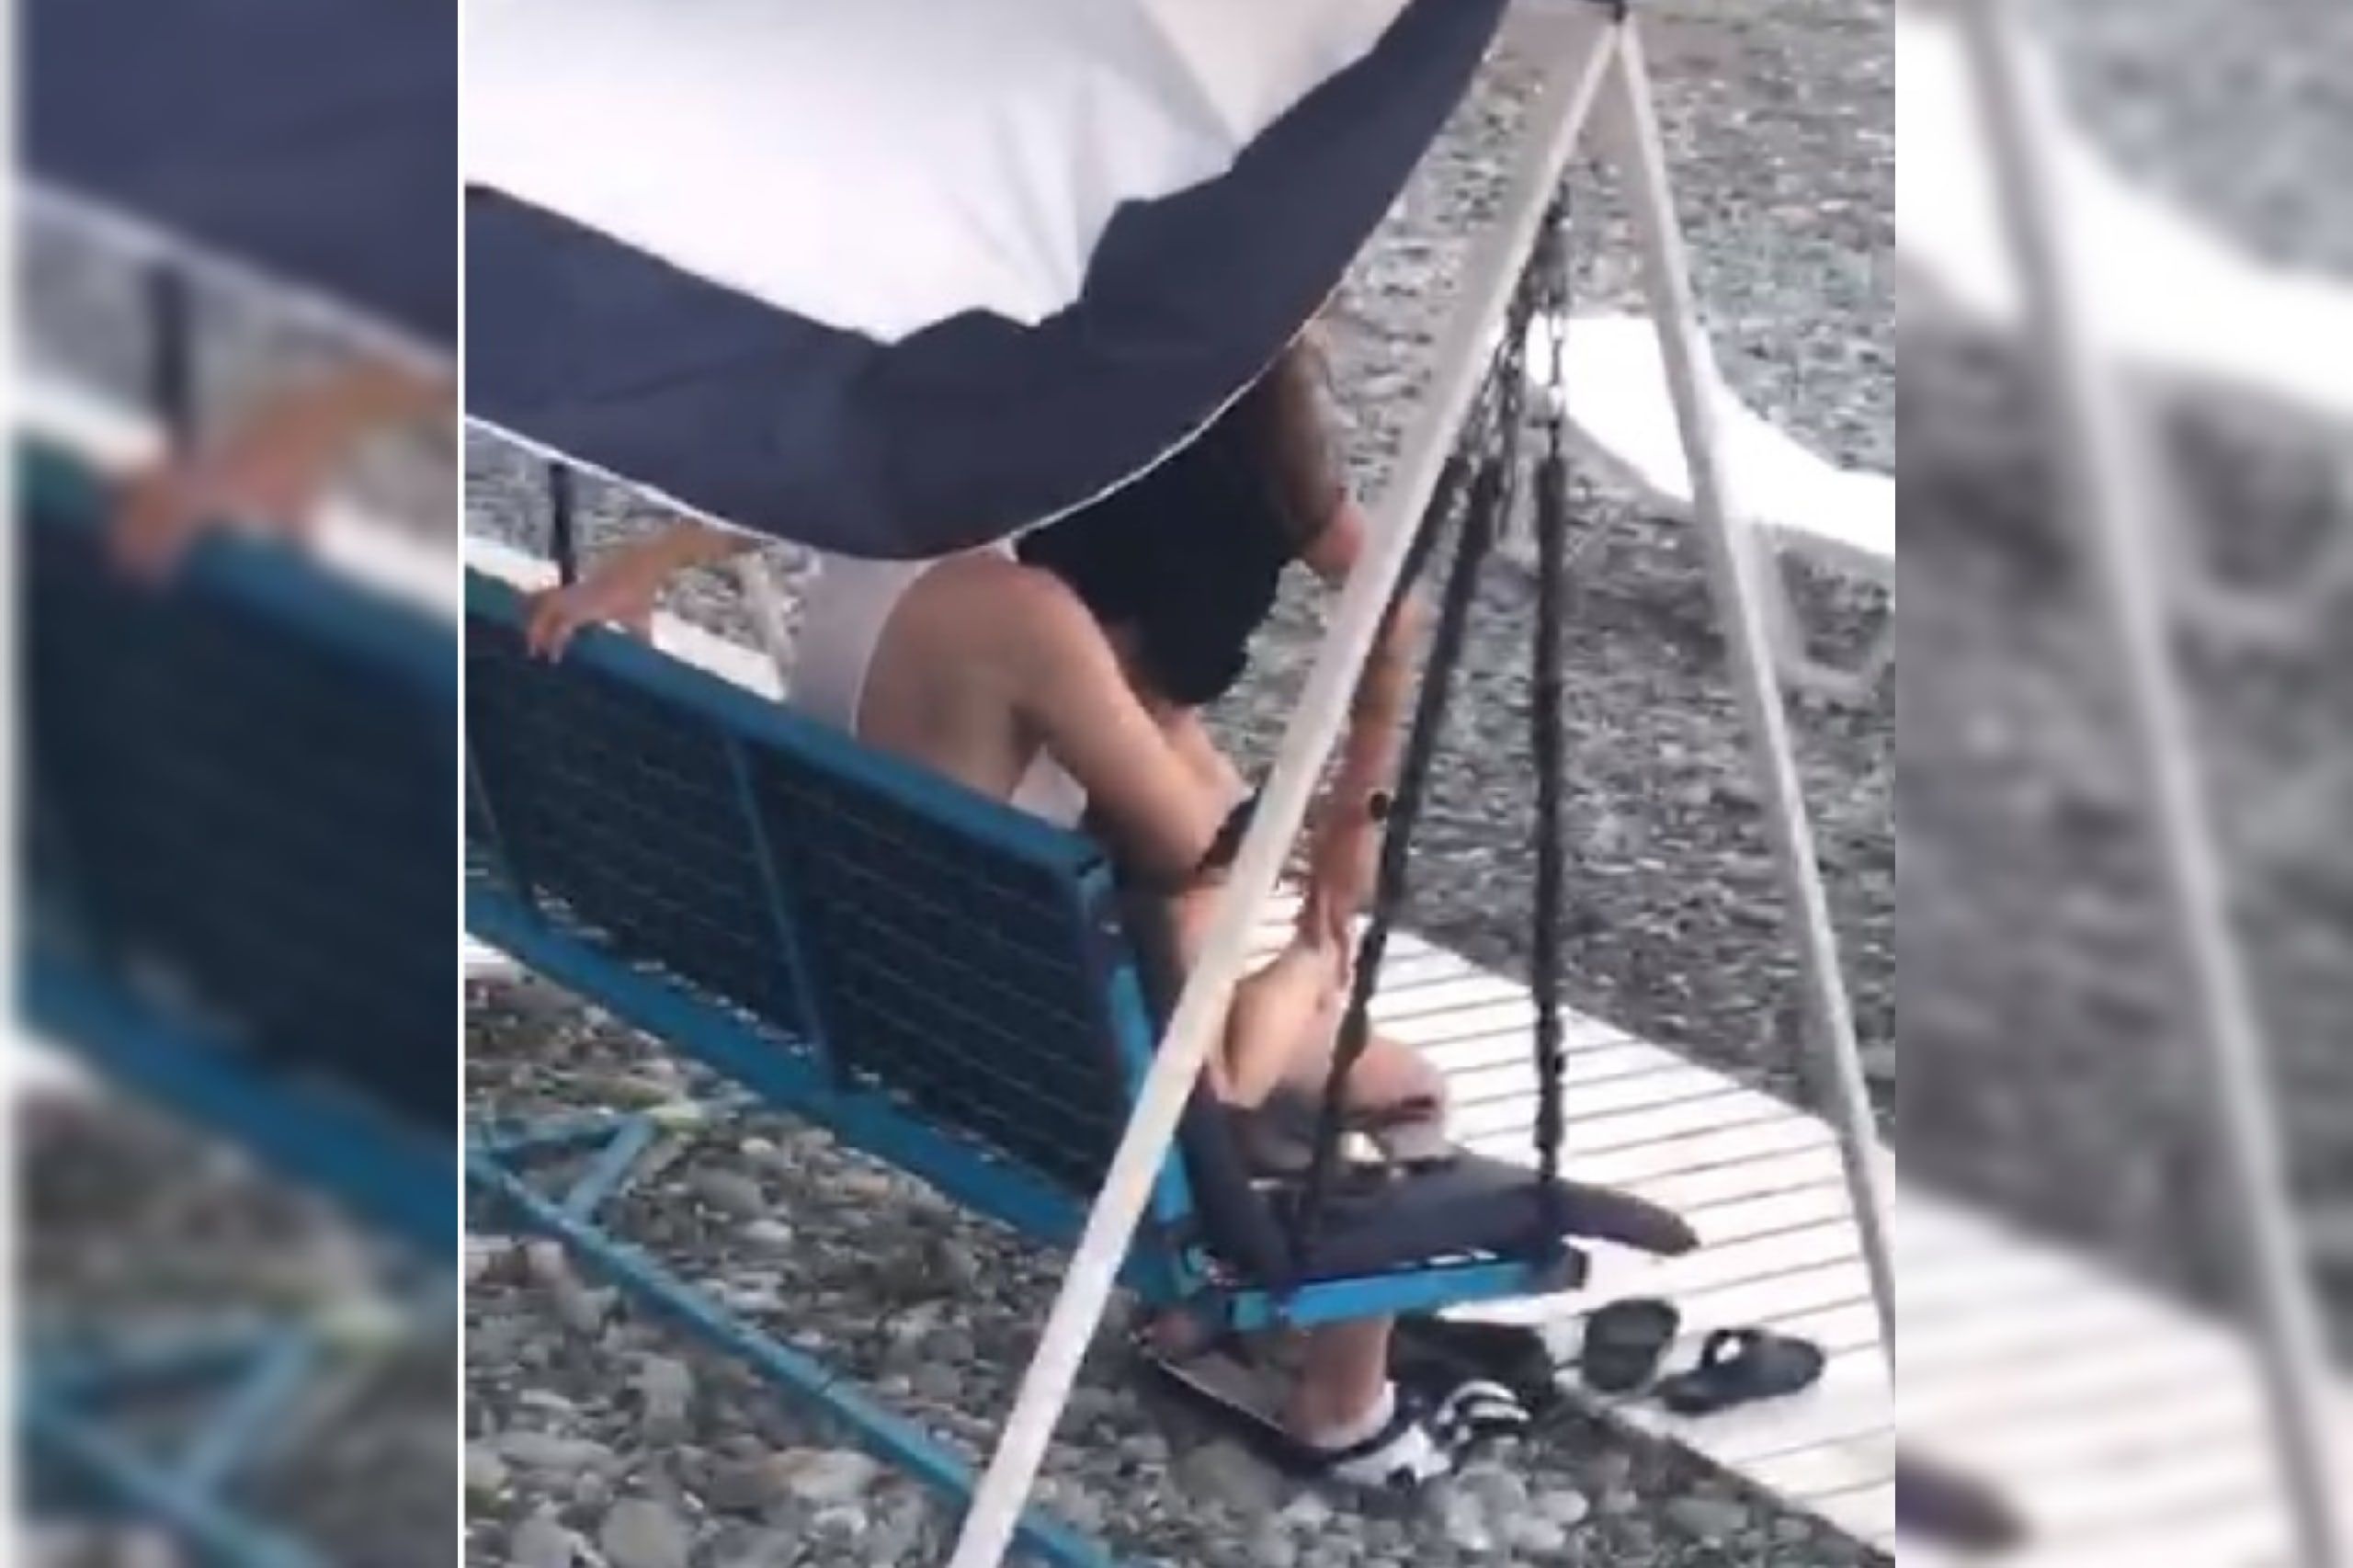 Казаки сняли на видео пару, занимающуюся сексом на пляже в Сочи |  15.07.2020 | Краснодар - БезФормата